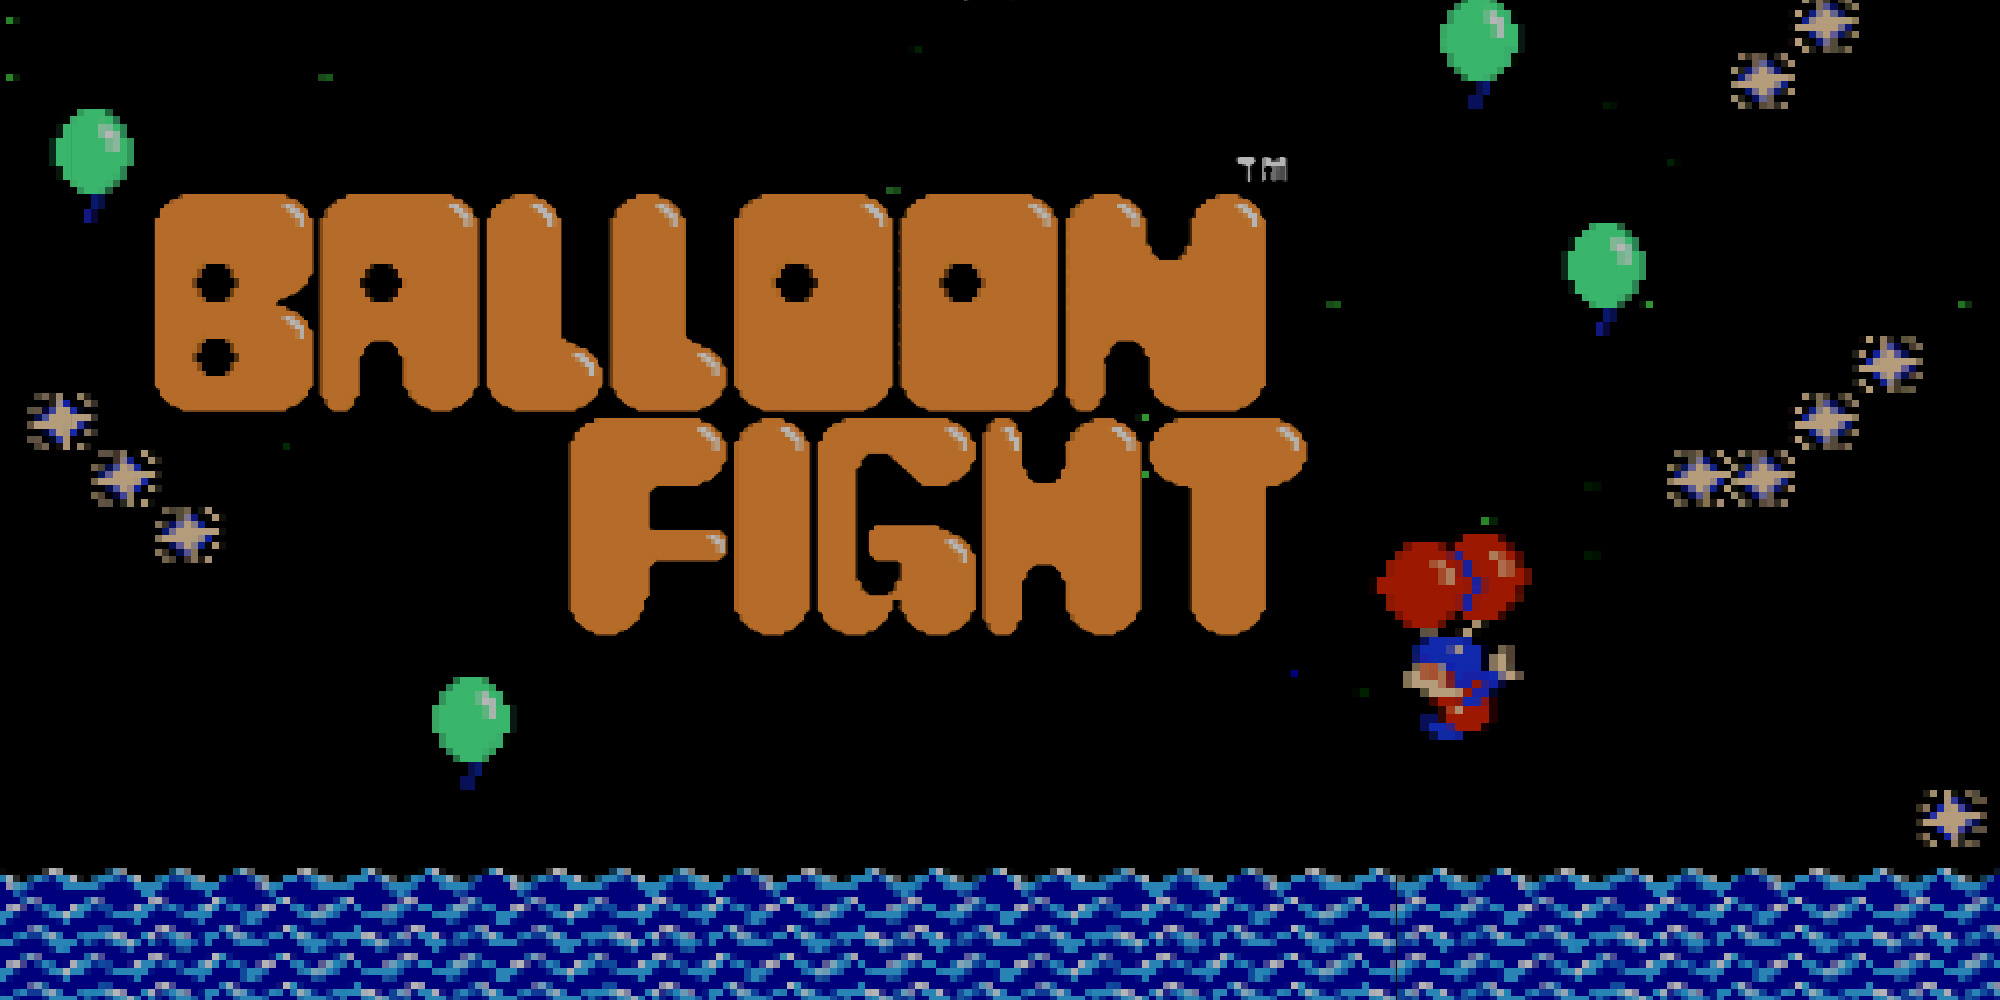 jaquette du jeu vidéo Balloon Fight